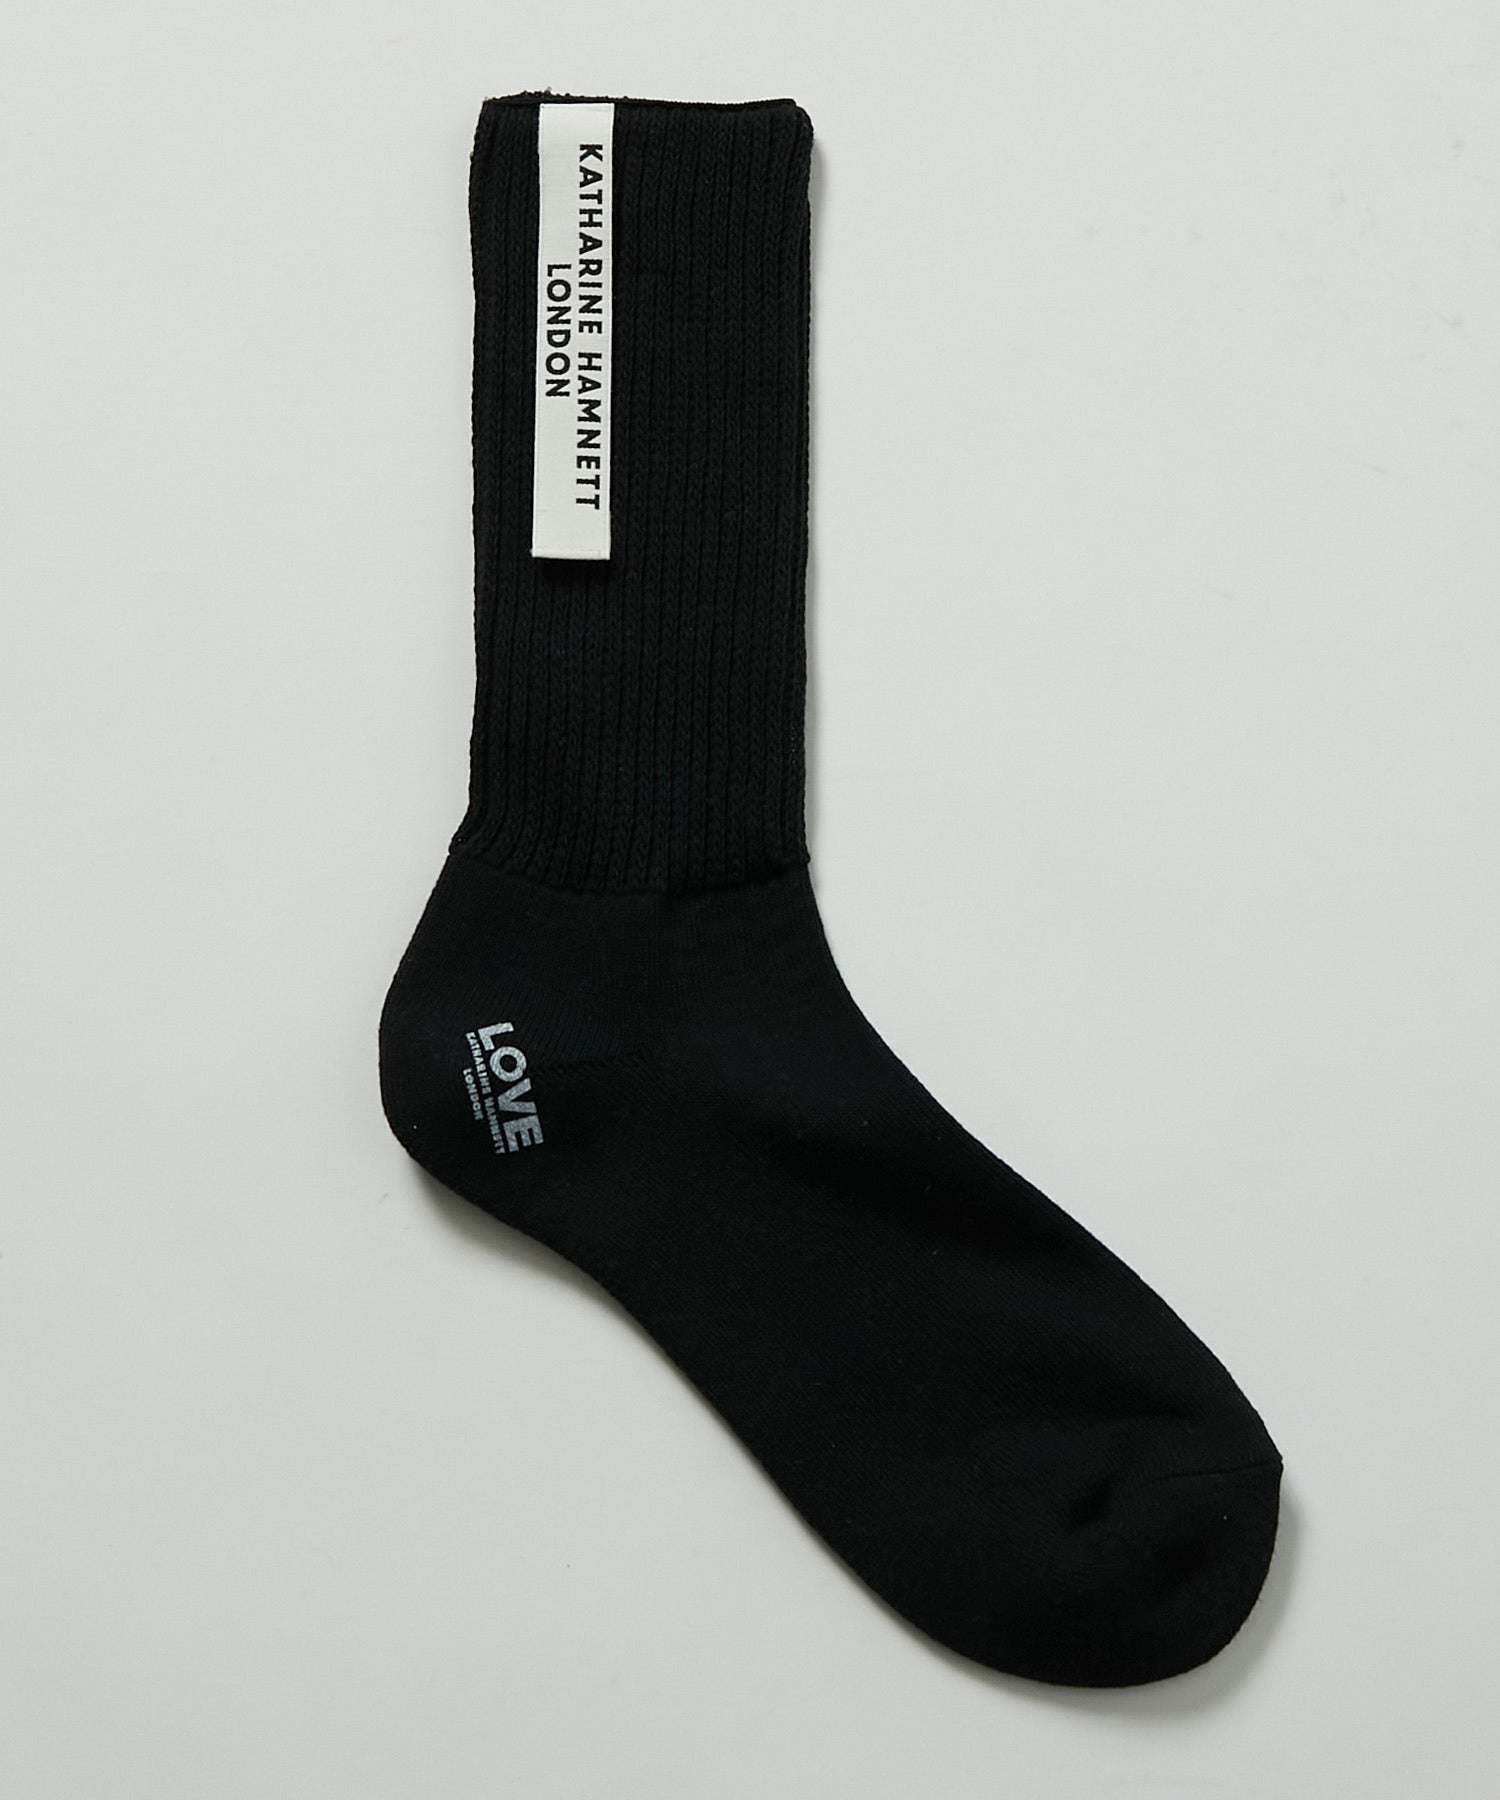 確認用‼︎⒍ KATHARINE HAMNETT LONDON socks | www.orangebluehome.com.br